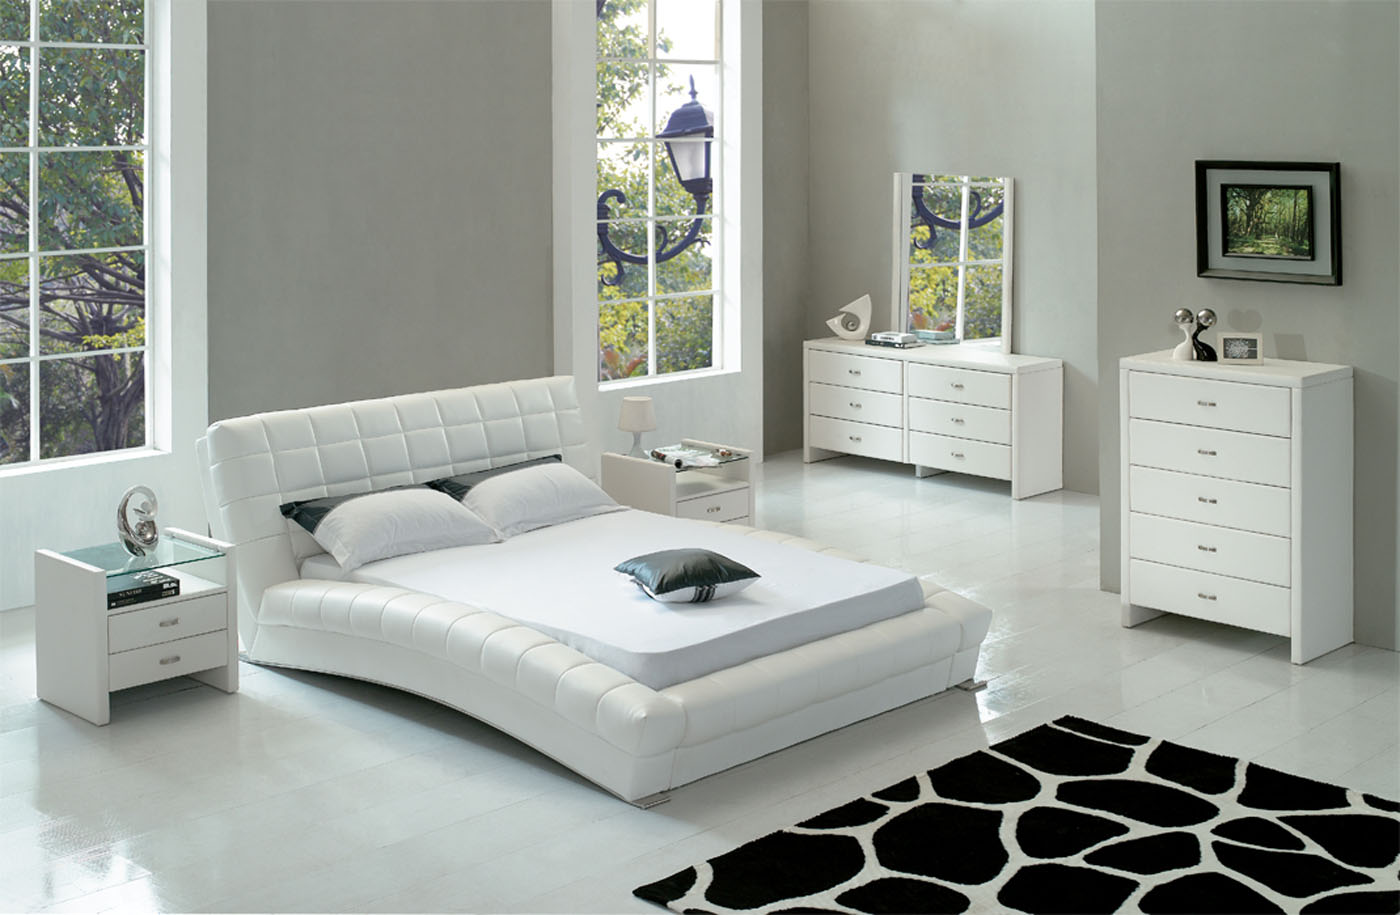 quebec white bedroom furniture